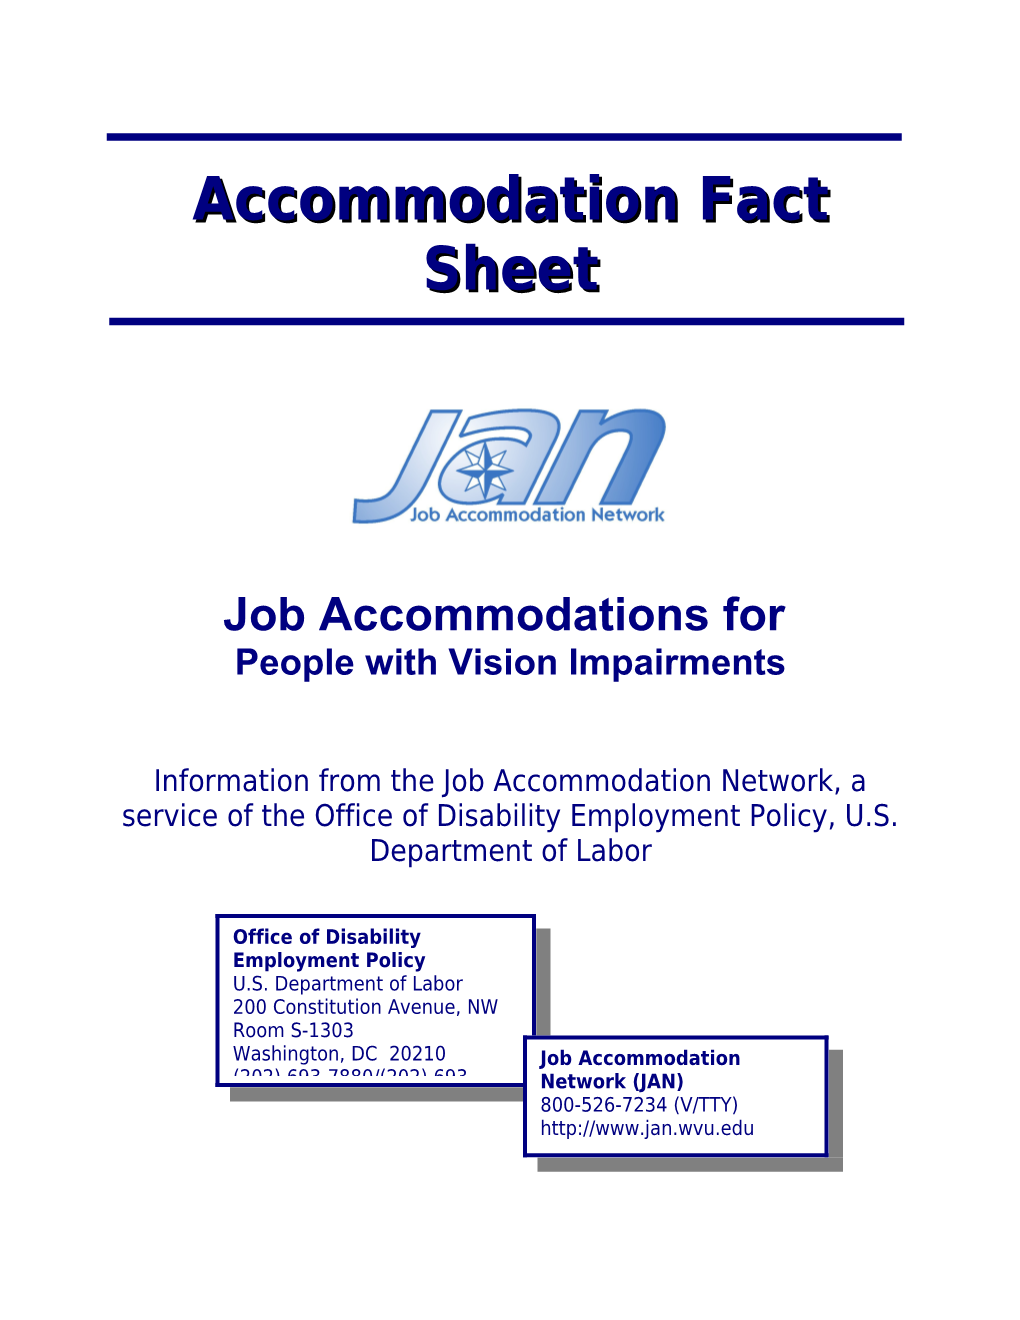 Accommodation Fact Sheet